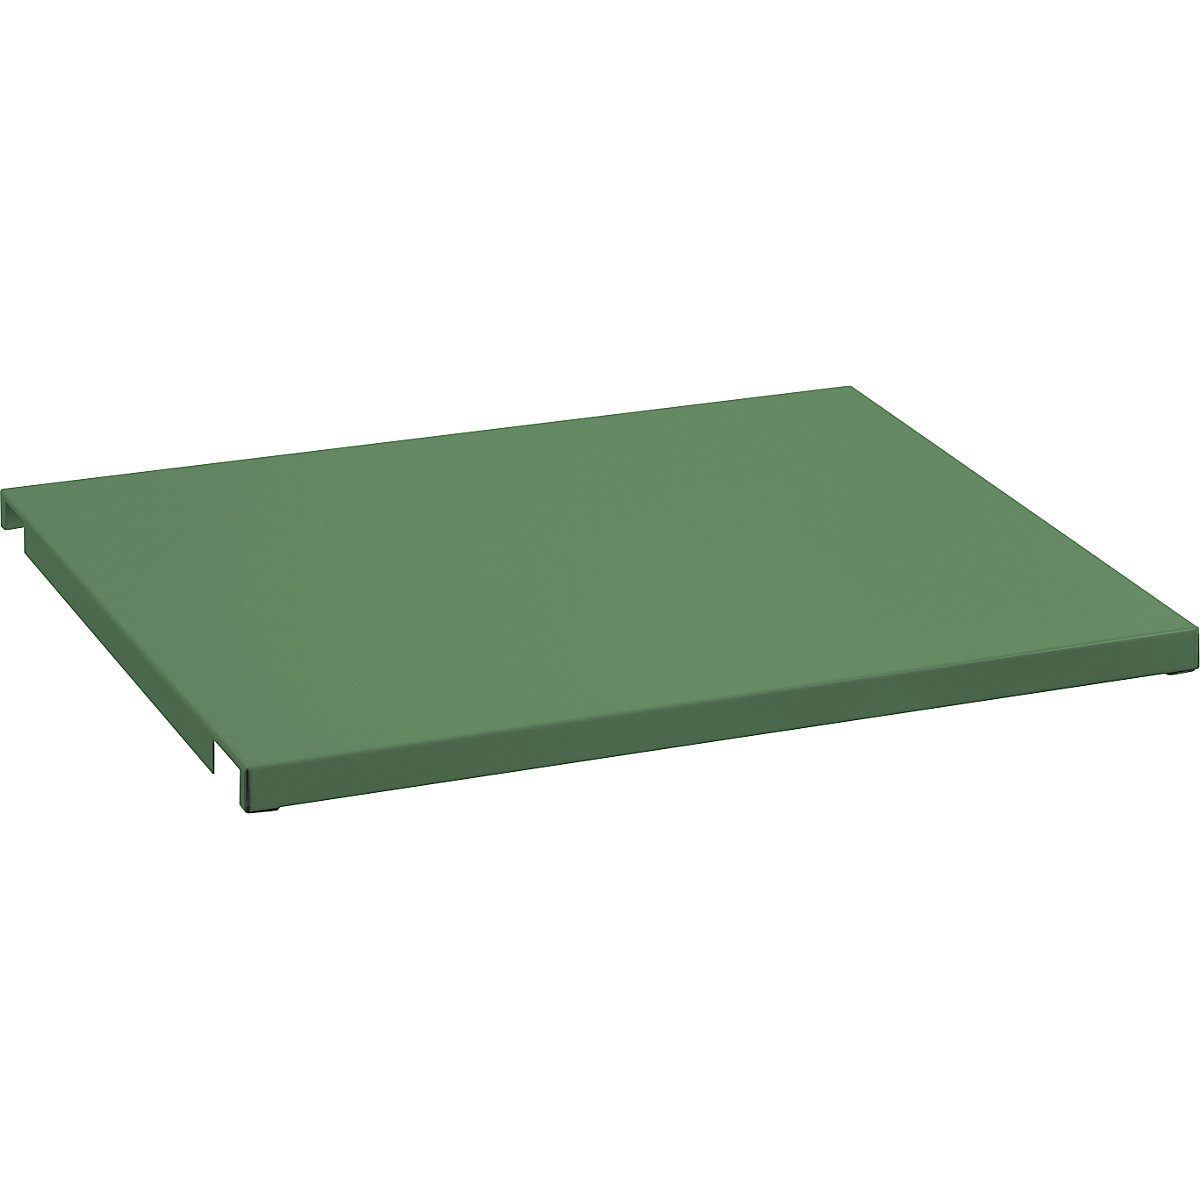 Recouvrement en tôle pour cadre de tablette – LISTA, pour l x p 890 x 1260 mm, vert réséda-3